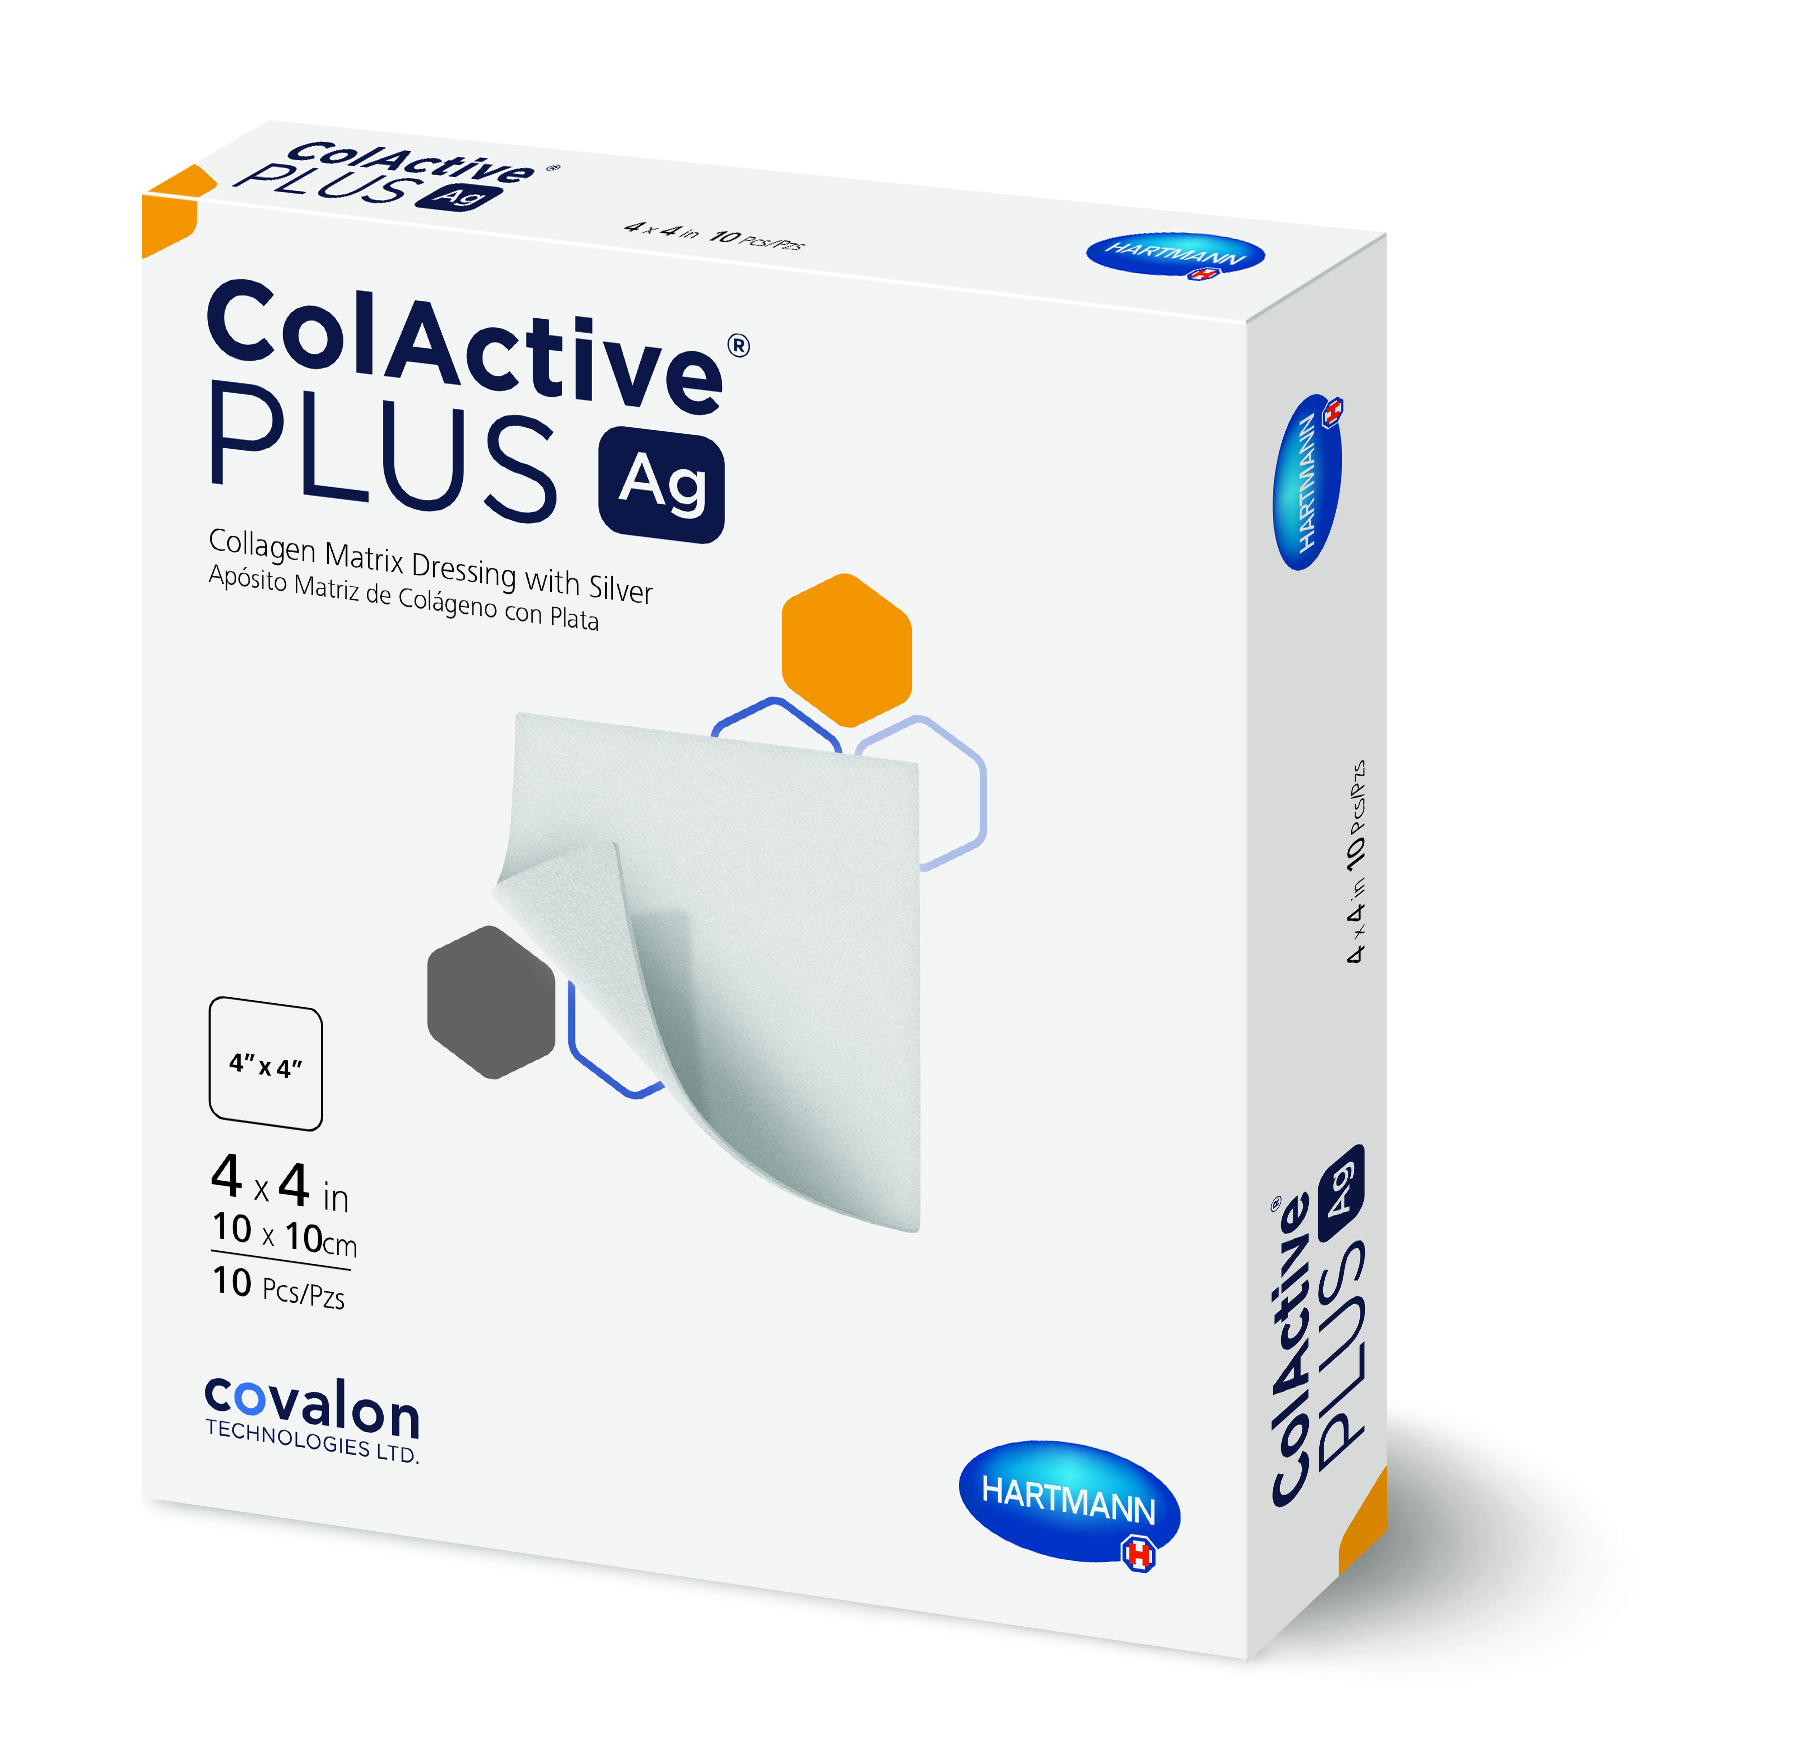 ColActive Plus Ag Collagen Dressing